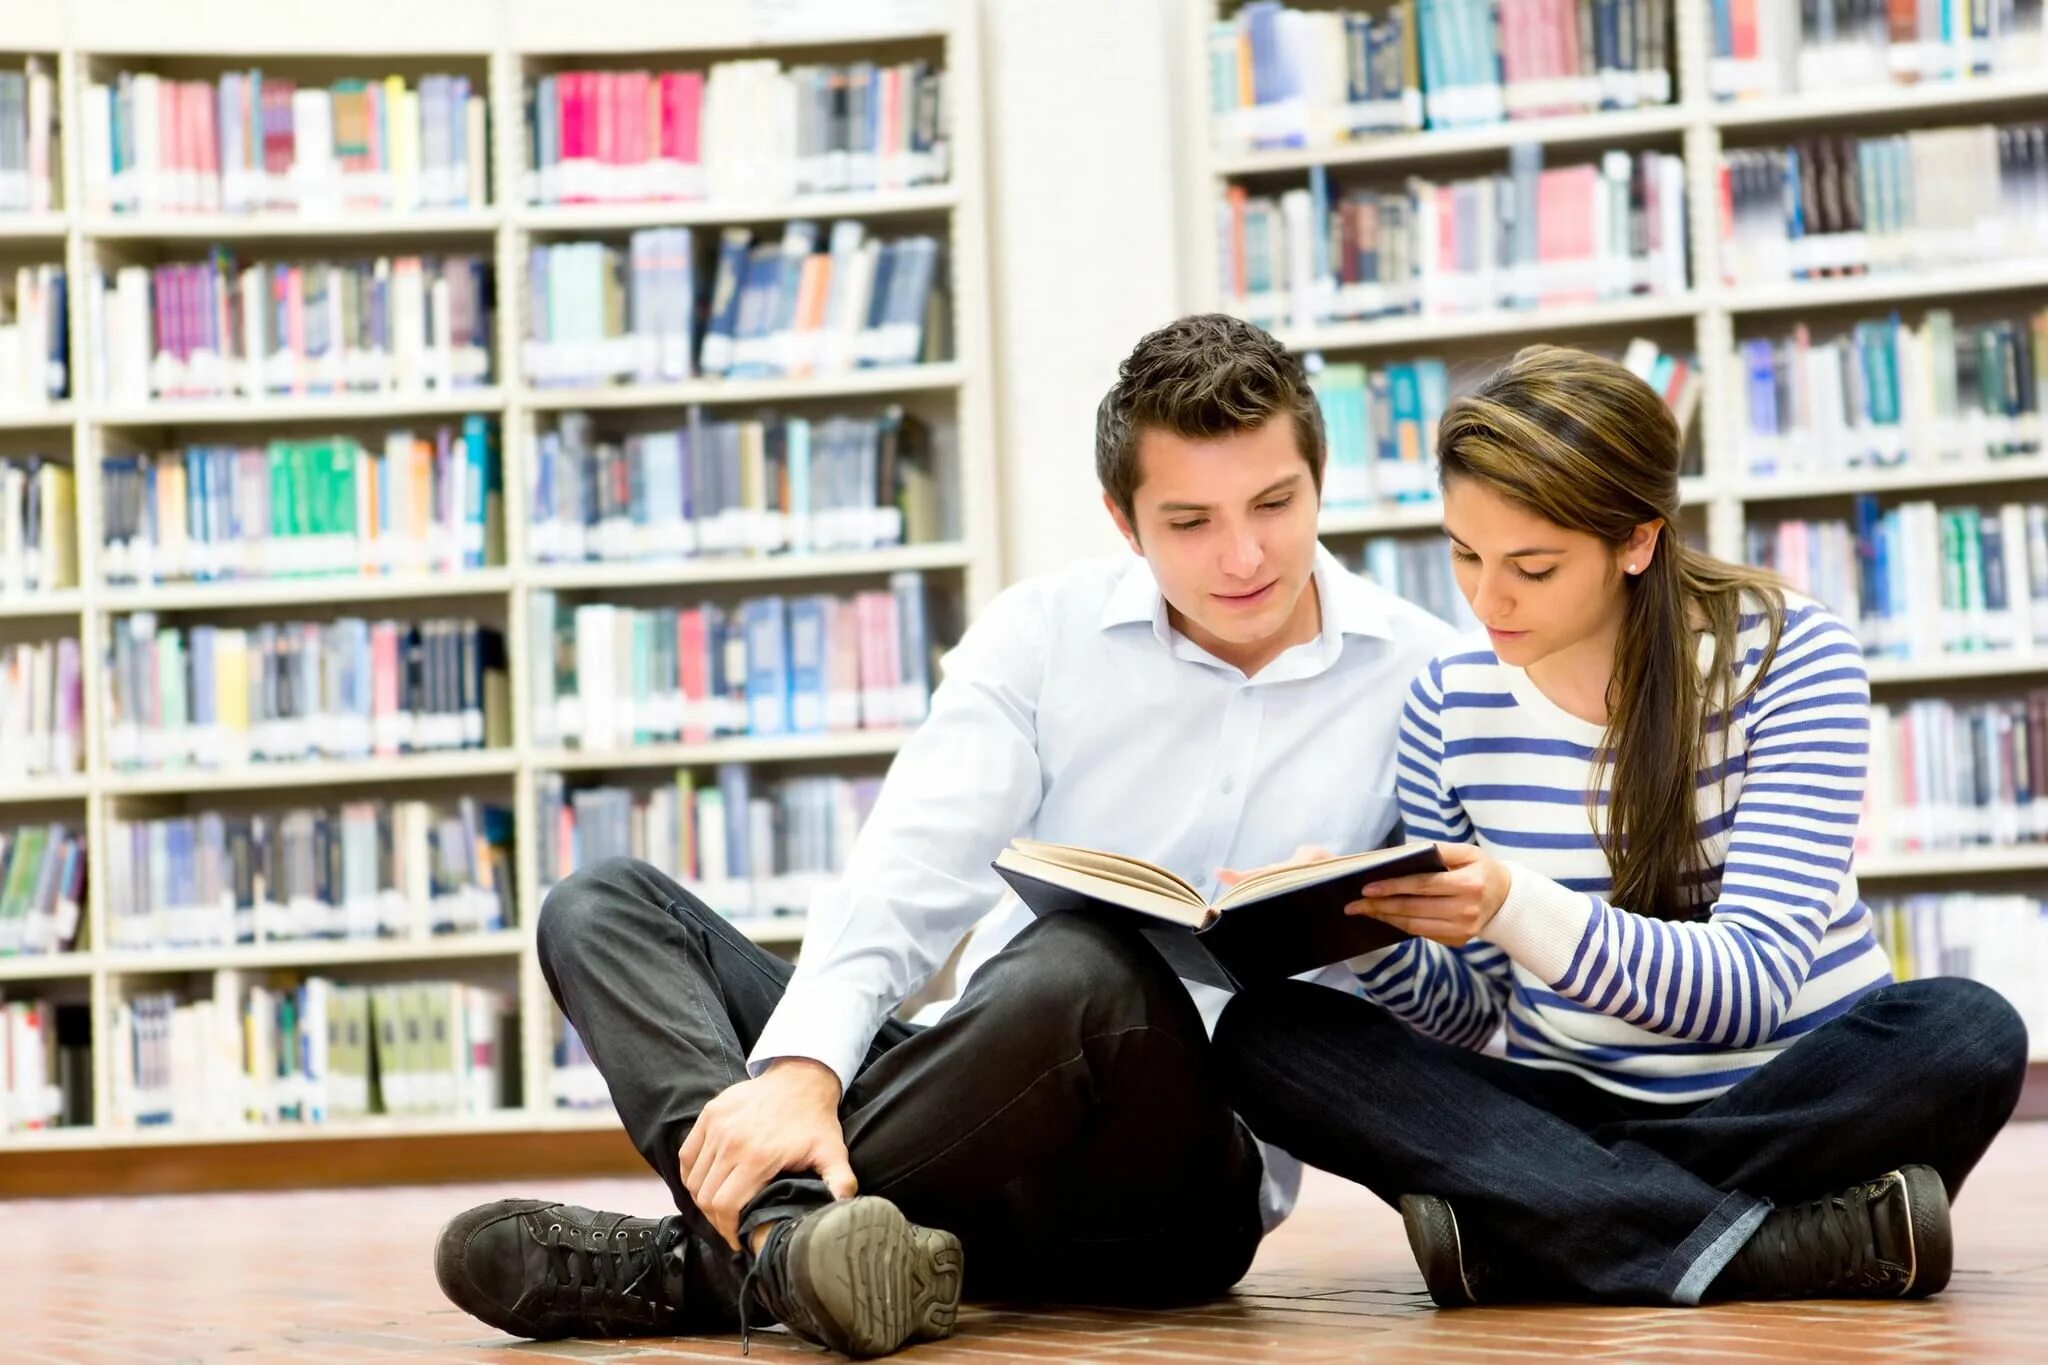 Чтение среди подростков. Подростки в библиотеке. Подросток с книгой. Книга человек. Чтение книг.